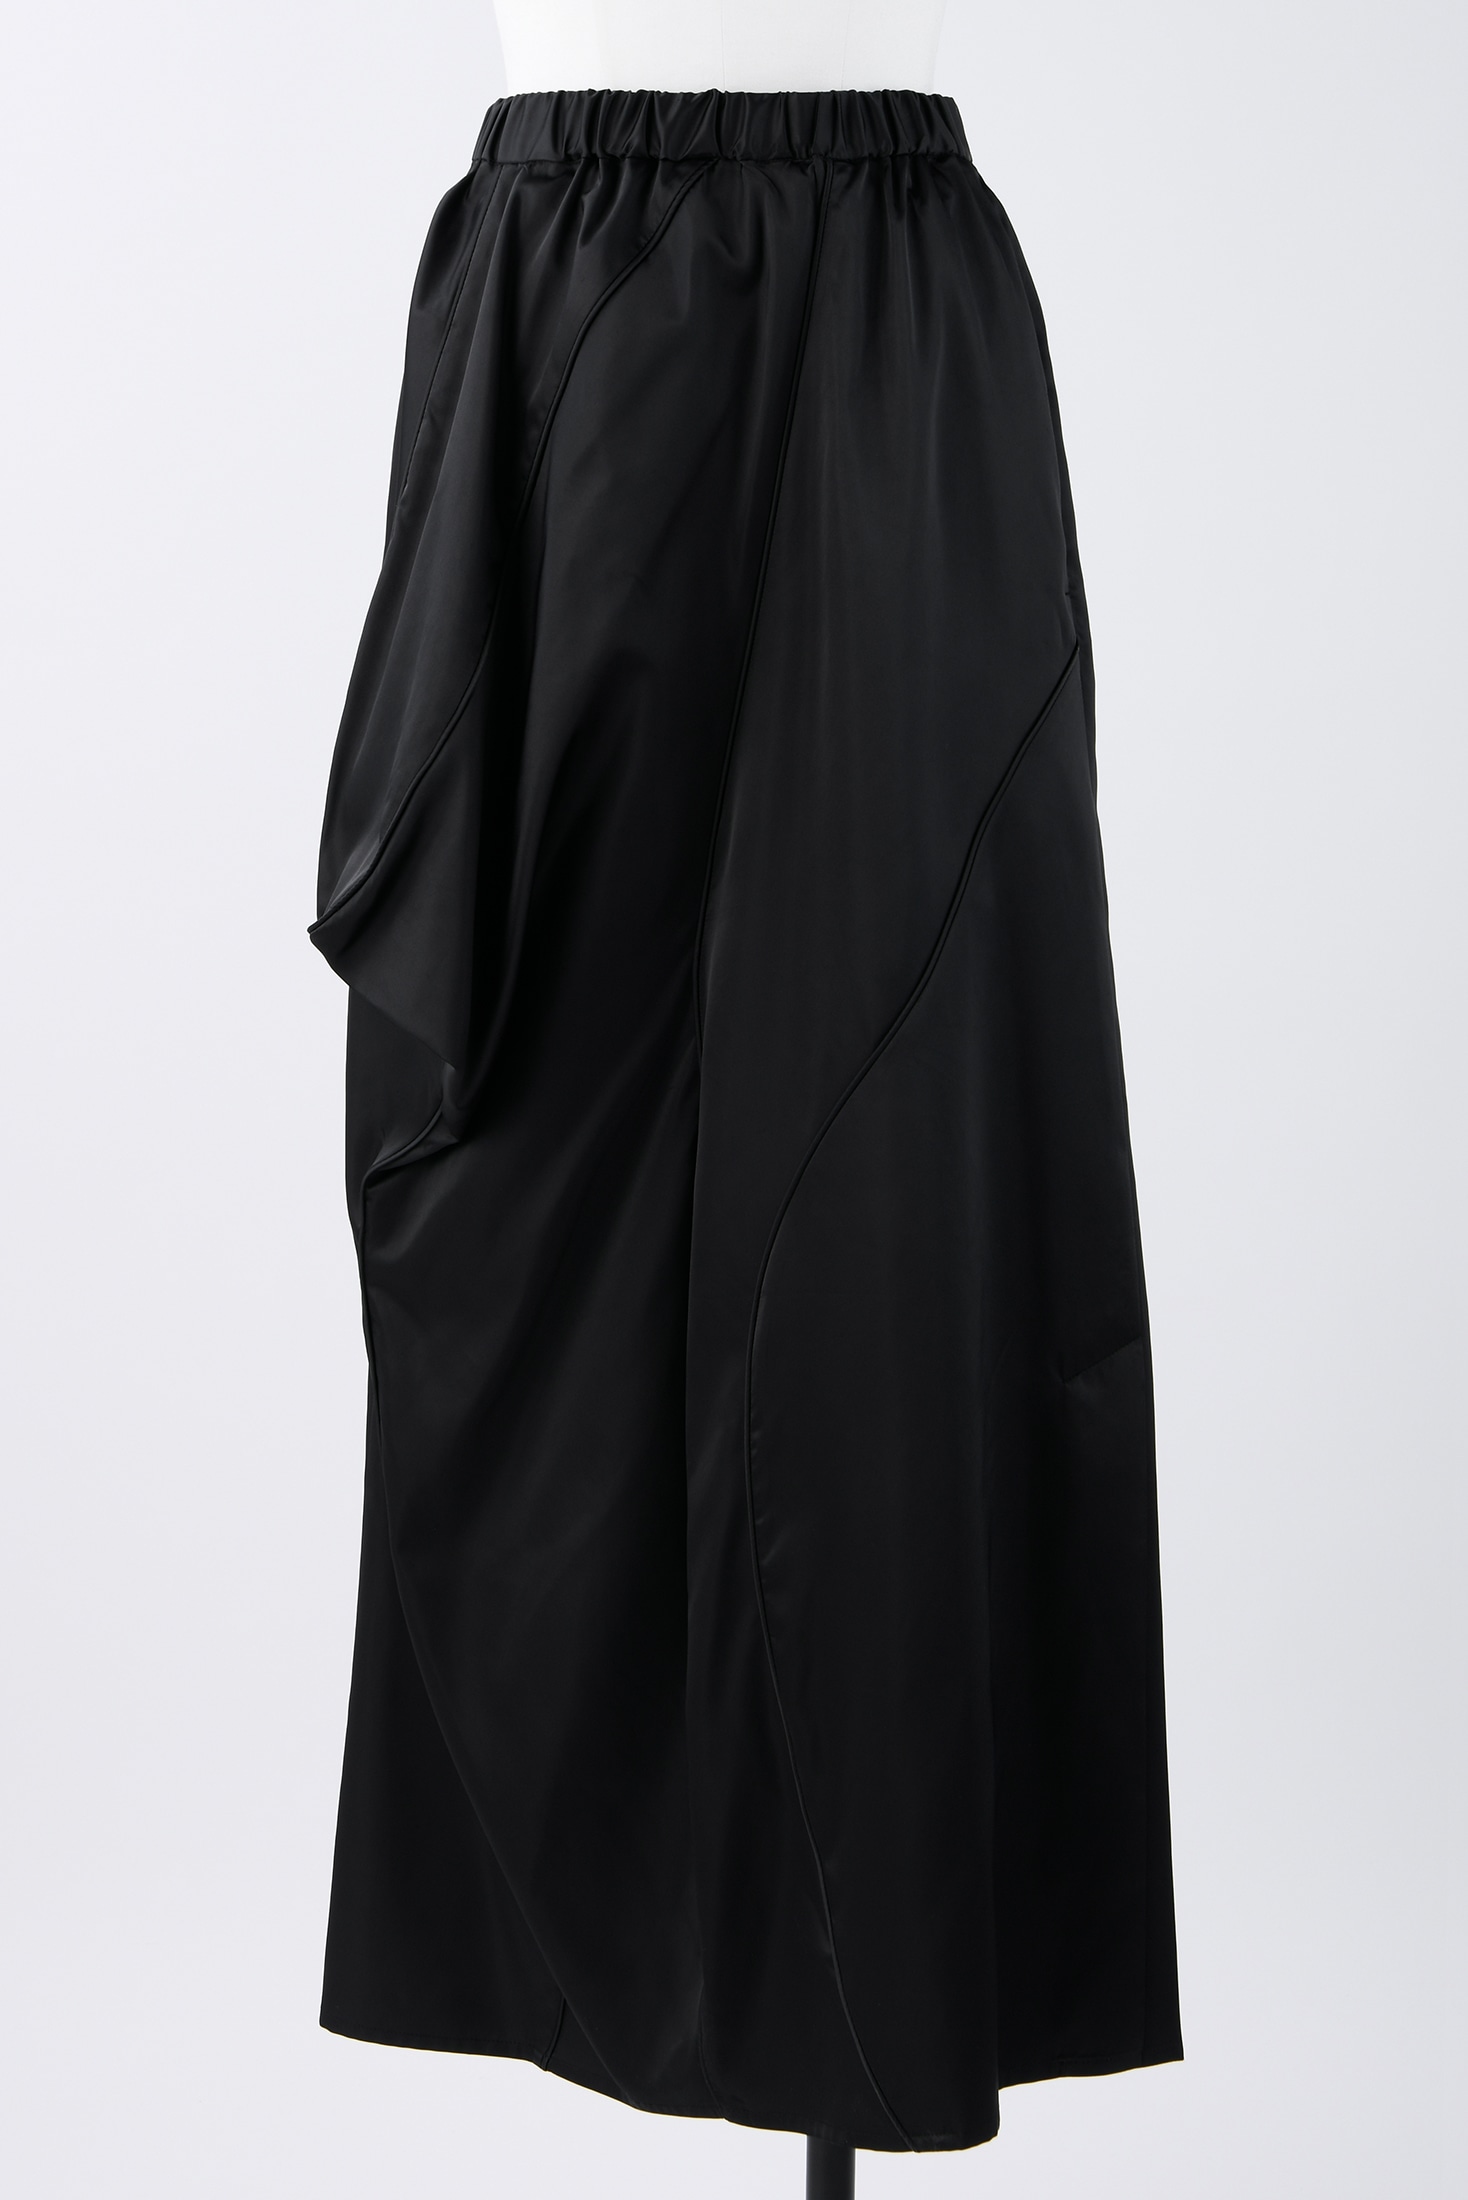 ナゴンスタンス Elastic Drape Skirt ブラックS - ロングスカート